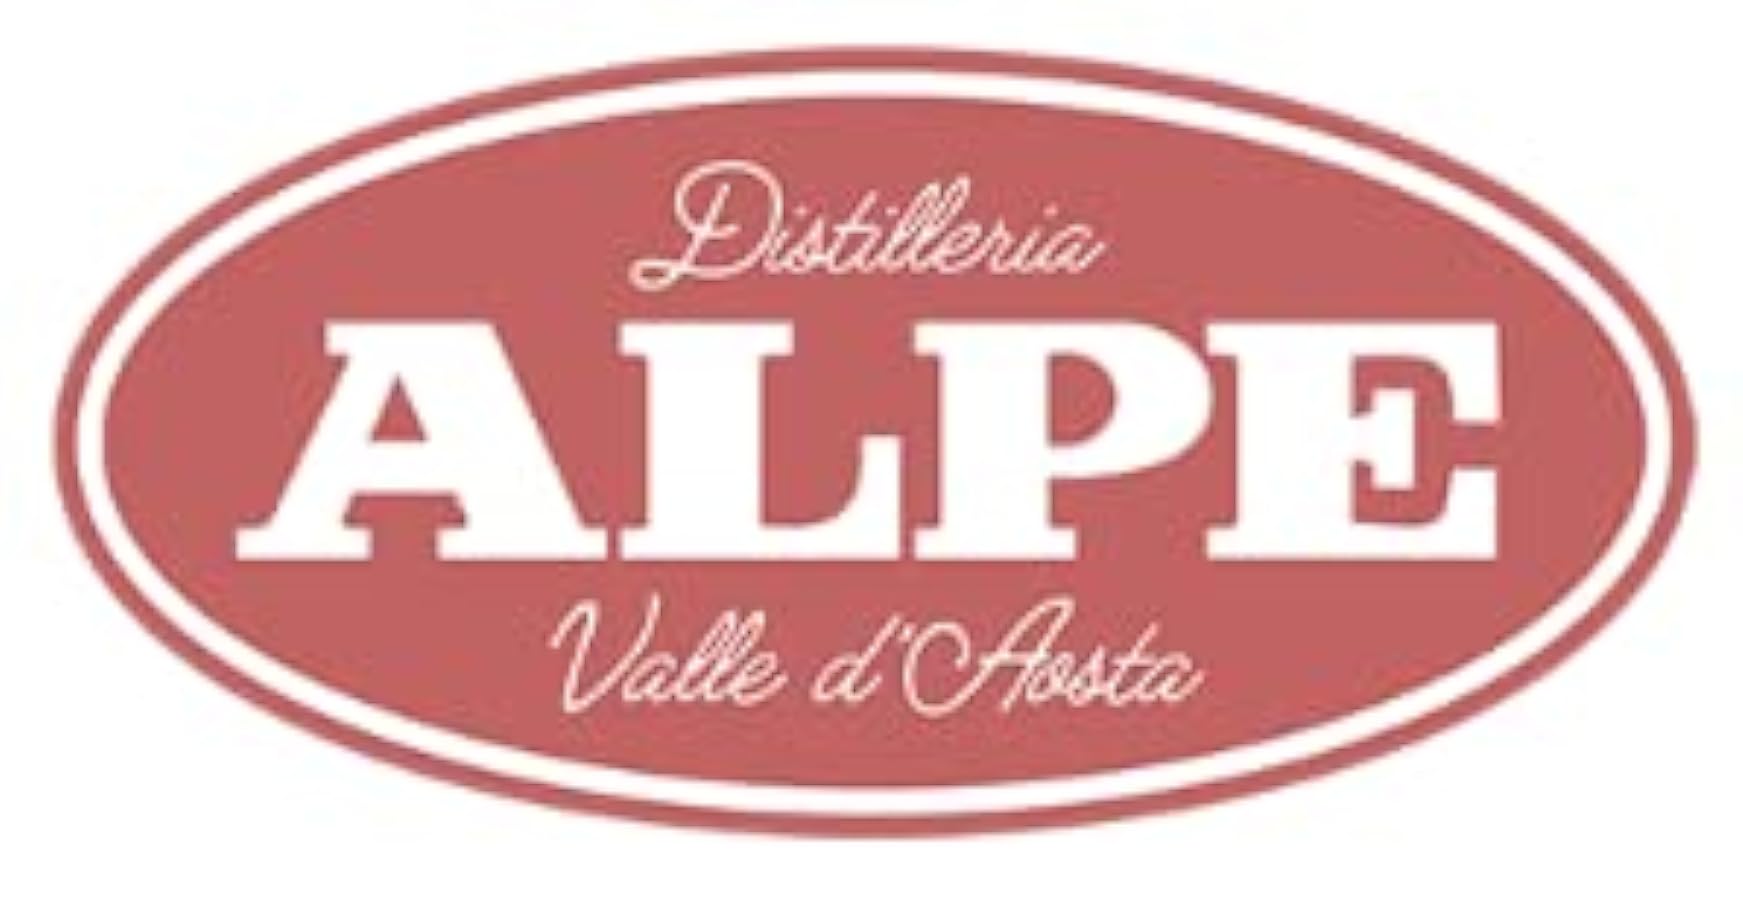 Genepy Herbetet Alpe - CONFEZIONE da 2 bottiglie 700 ml - liquore della Valle D´Aosta 74232837